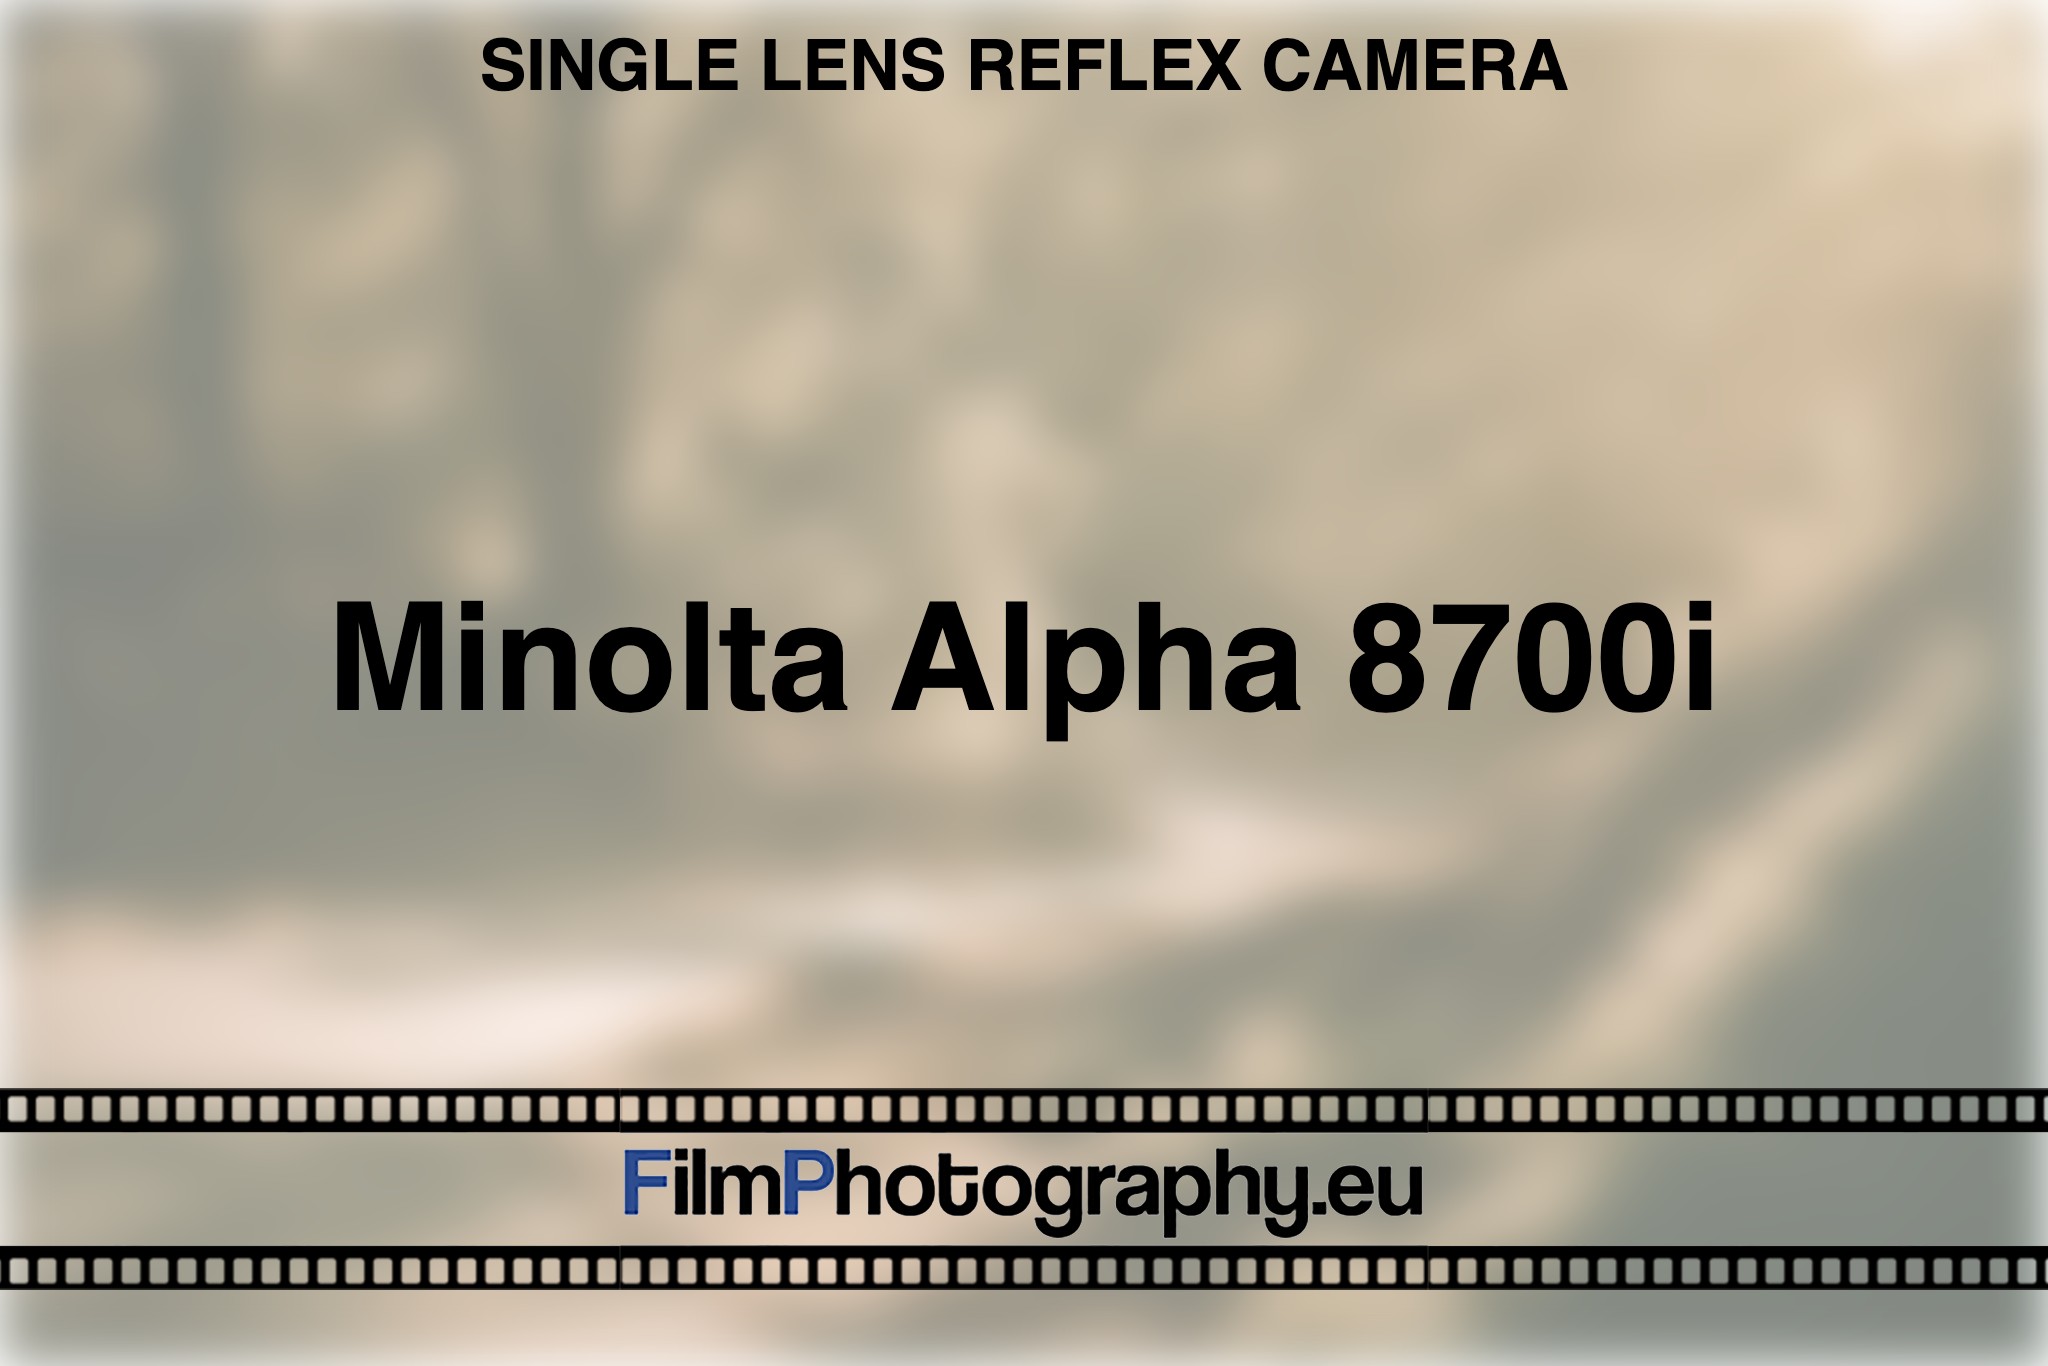 minolta-alpha-8700i-single-lens-reflex-camera-bnv